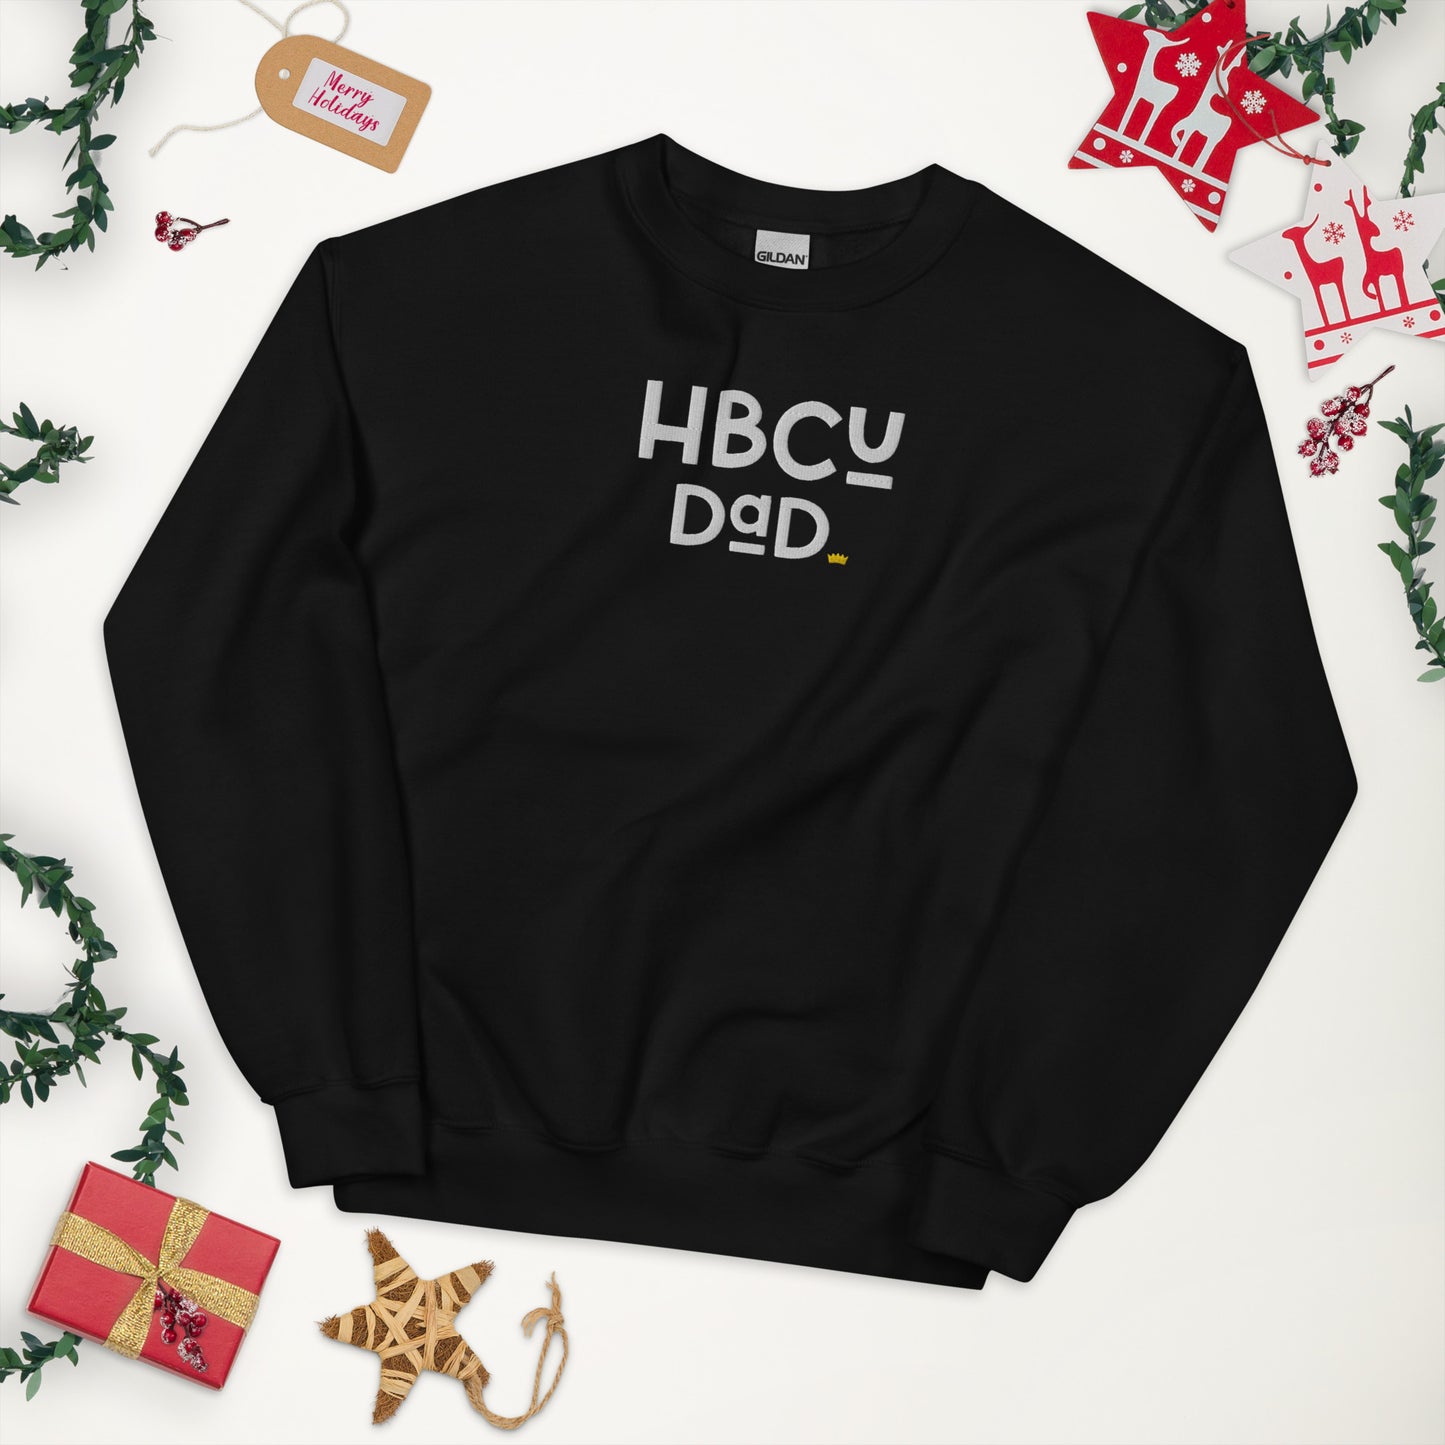 Dad - HBCU Embroidered Unisex Sweatshirt